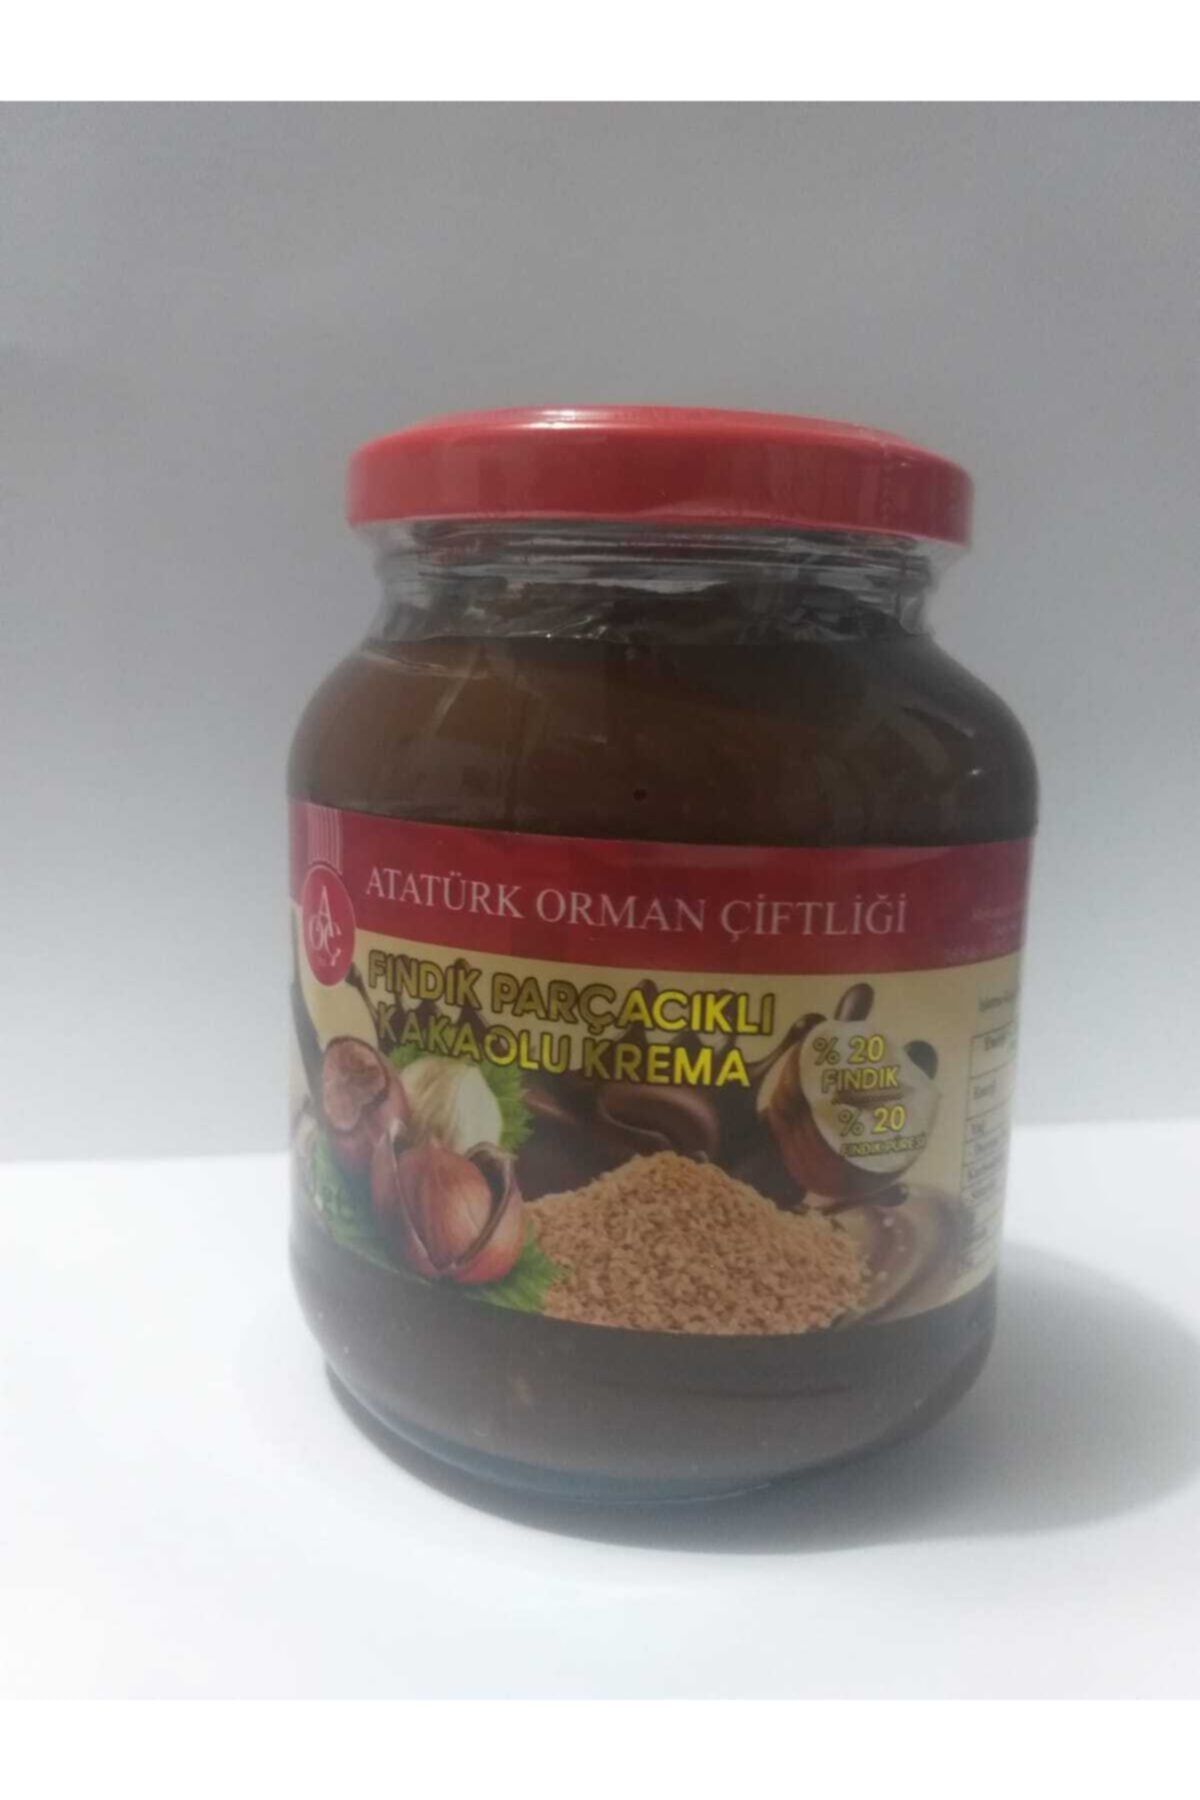 Atatürk Orman Çiftliği Kakaolu Krema 320 gr Fındık Parçacıklı